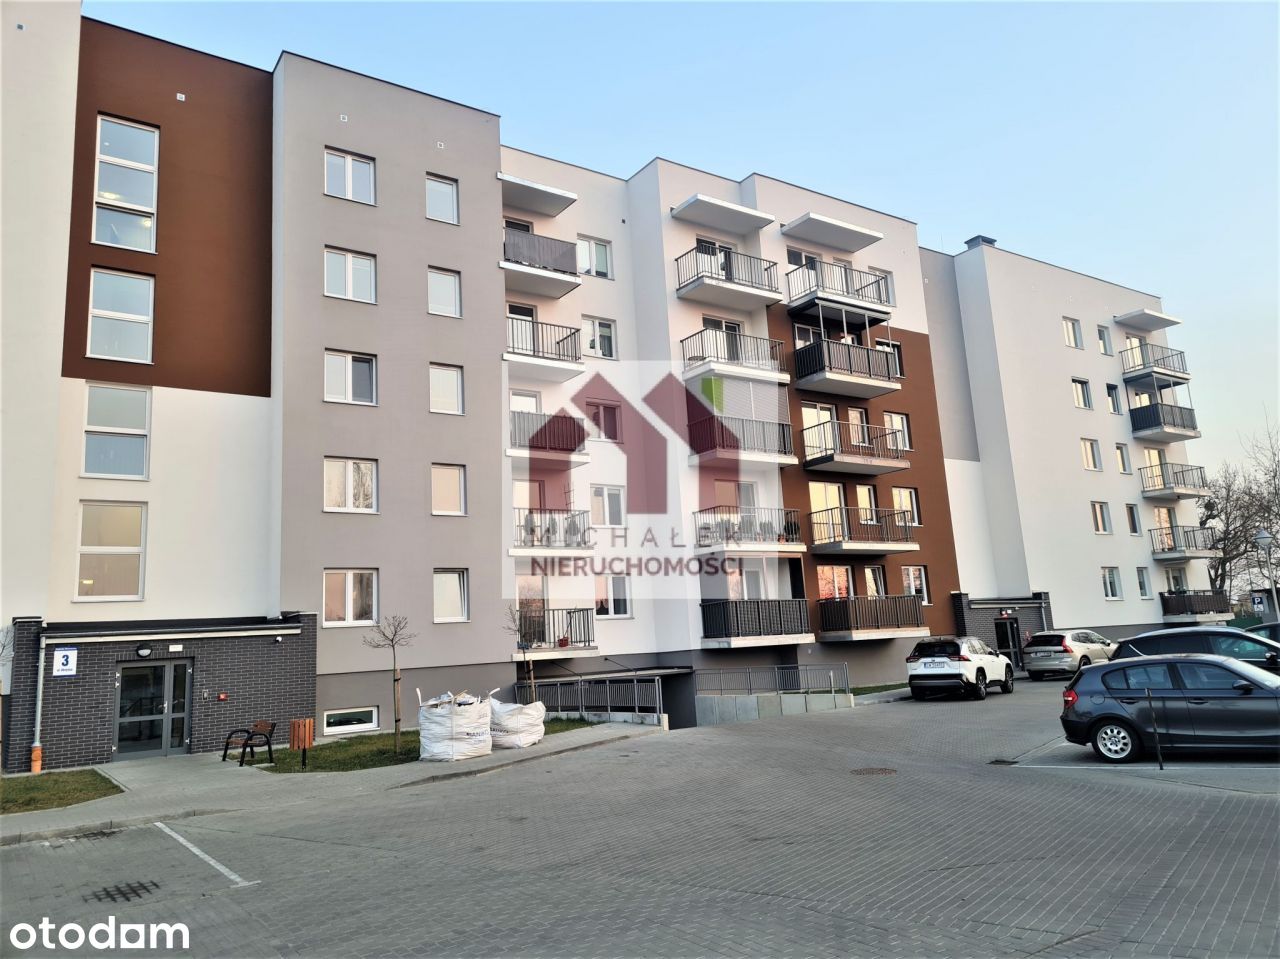 Nowe mieszkanie, 55 mkw, IIp., winda, blok 2021r.,